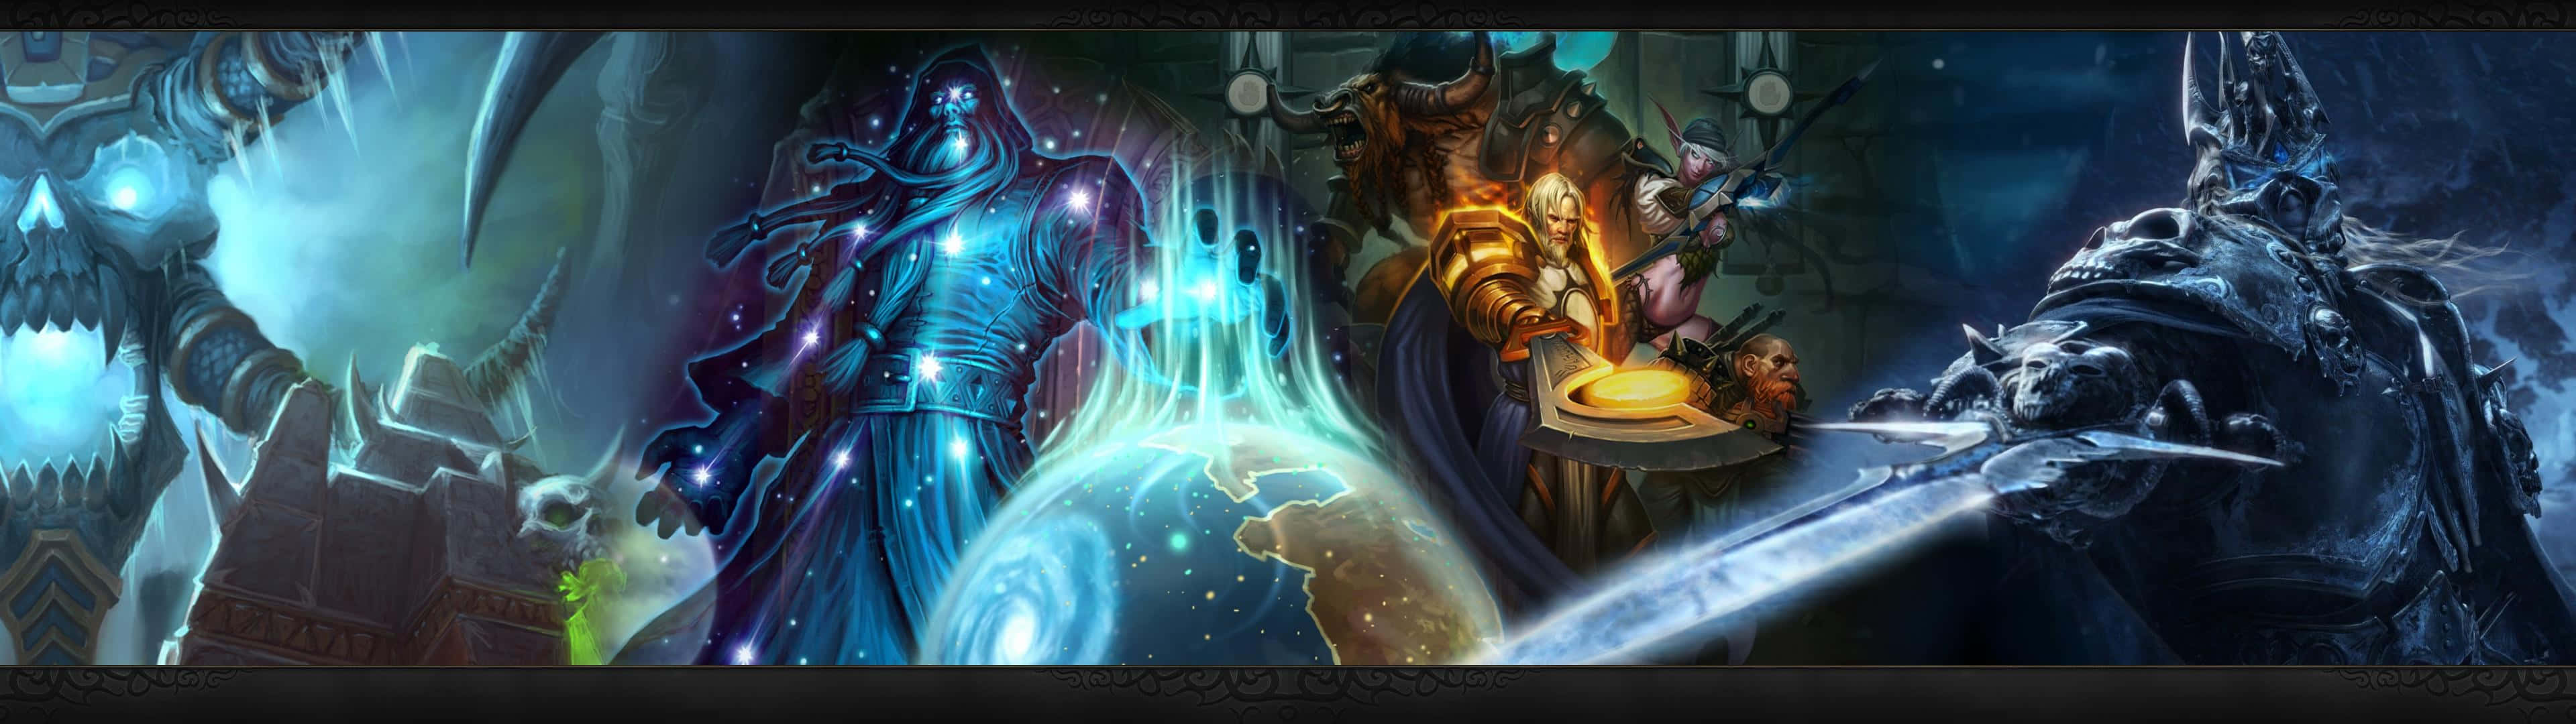 Warcraft2 Banner Wallpaper